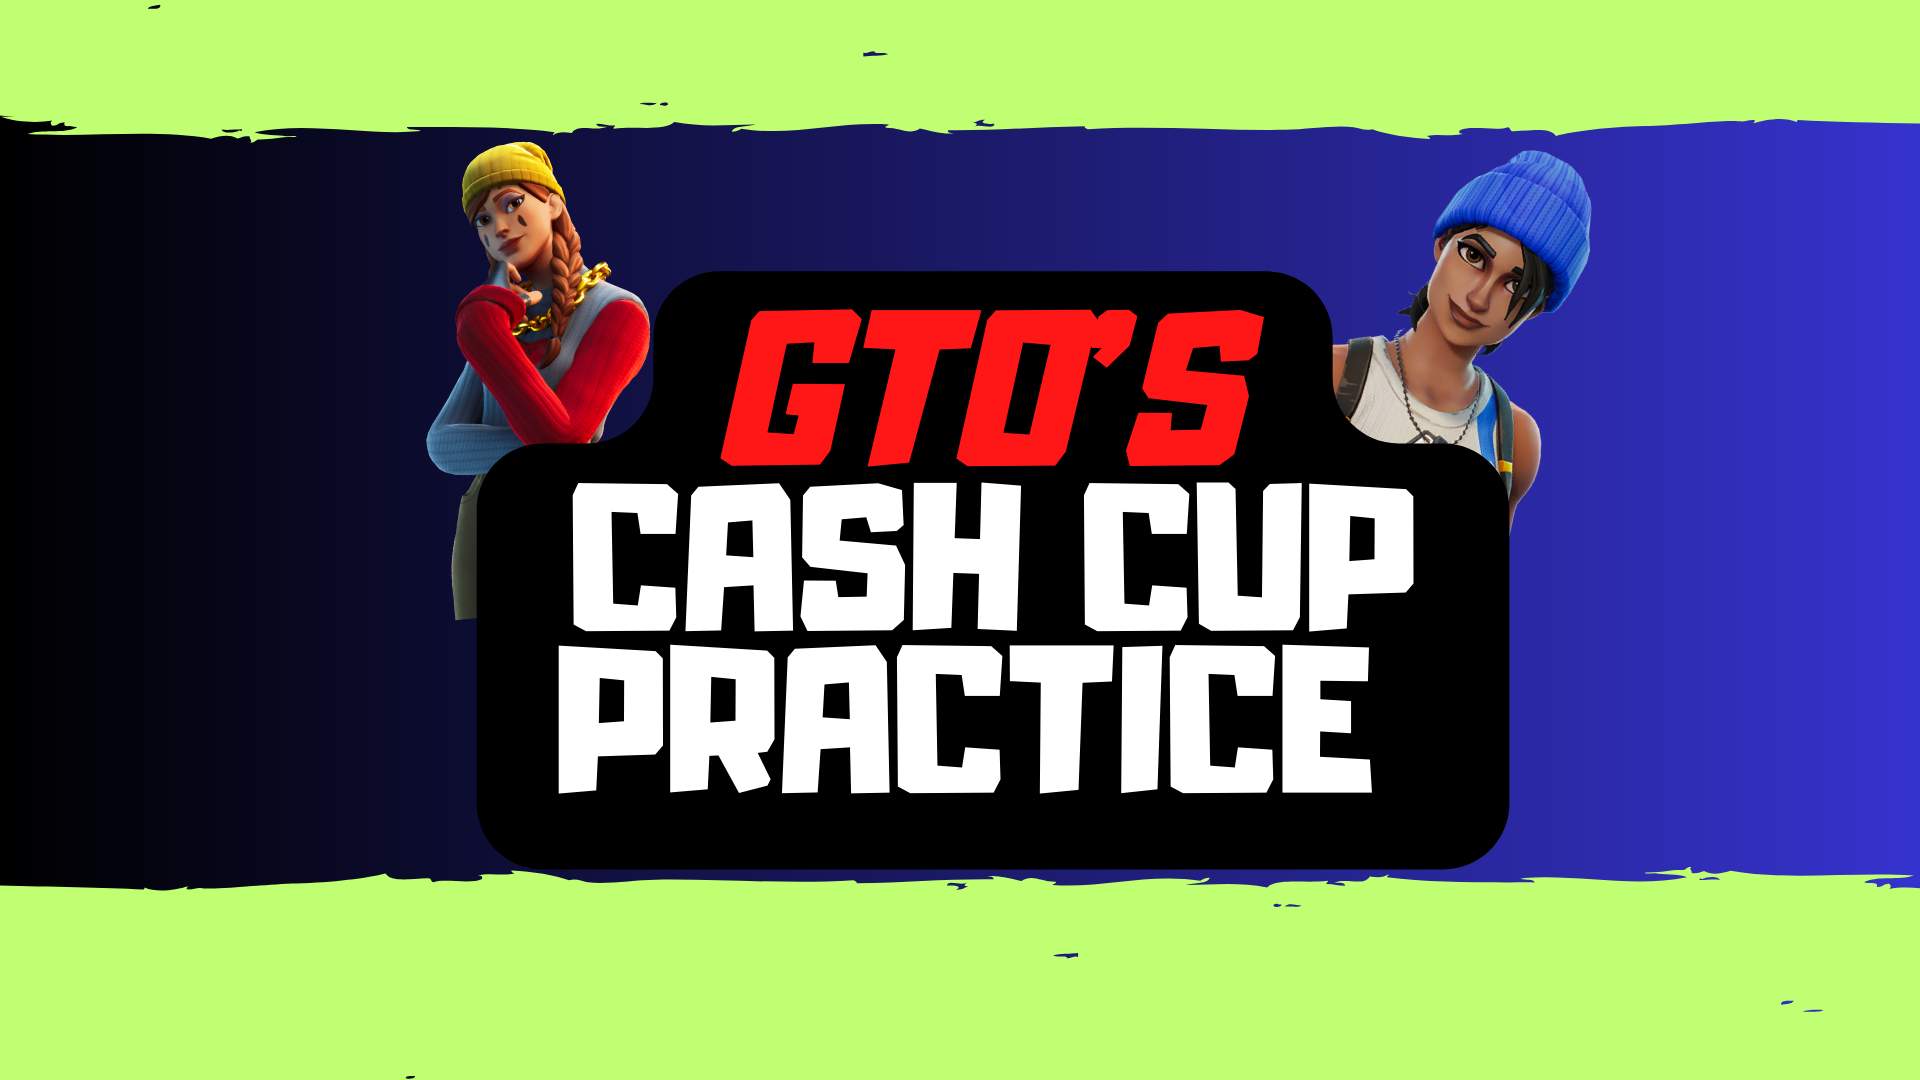 GTOS CASH CUP PRACTICE